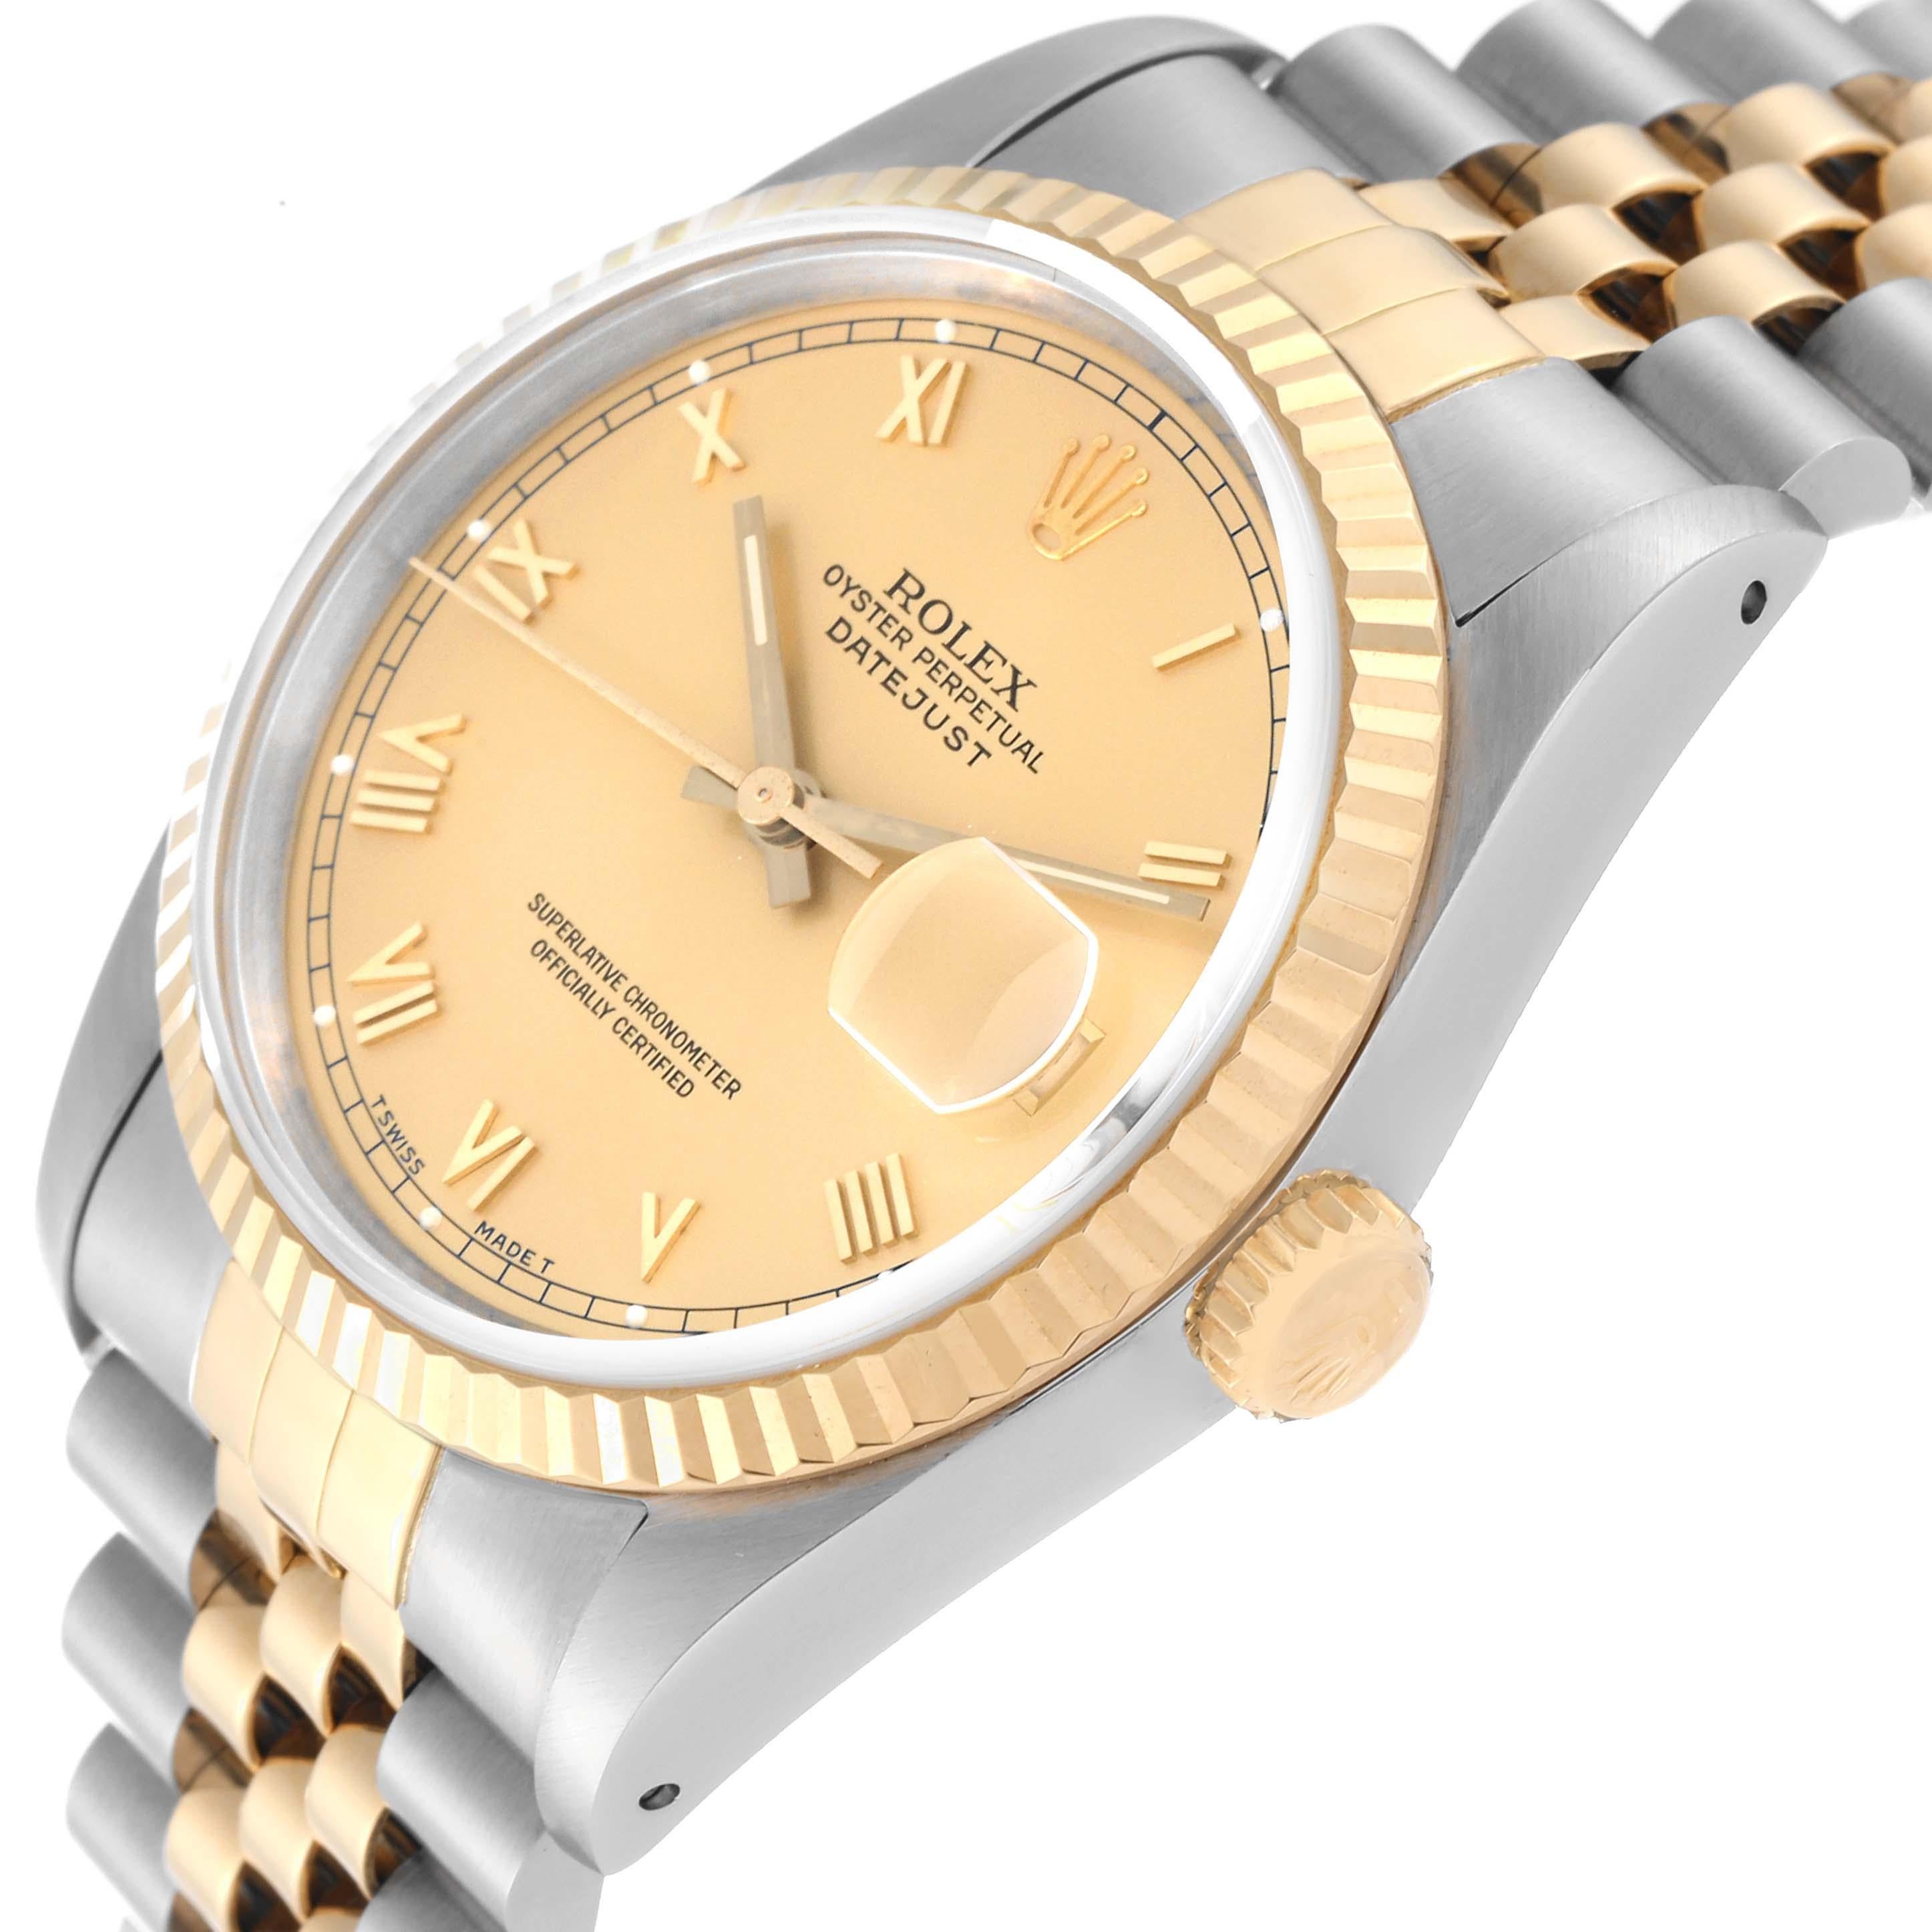 Rolex Datejust Steel Yellow Gold Champagne Dial Mens Watch 16233. Mouvement automatique à remontage automatique, officiellement certifié chronomètre. Boîtier en acier inoxydable de 36.0 mm de diamètre. Logo Rolex sur une couronne. Lunette cannelée